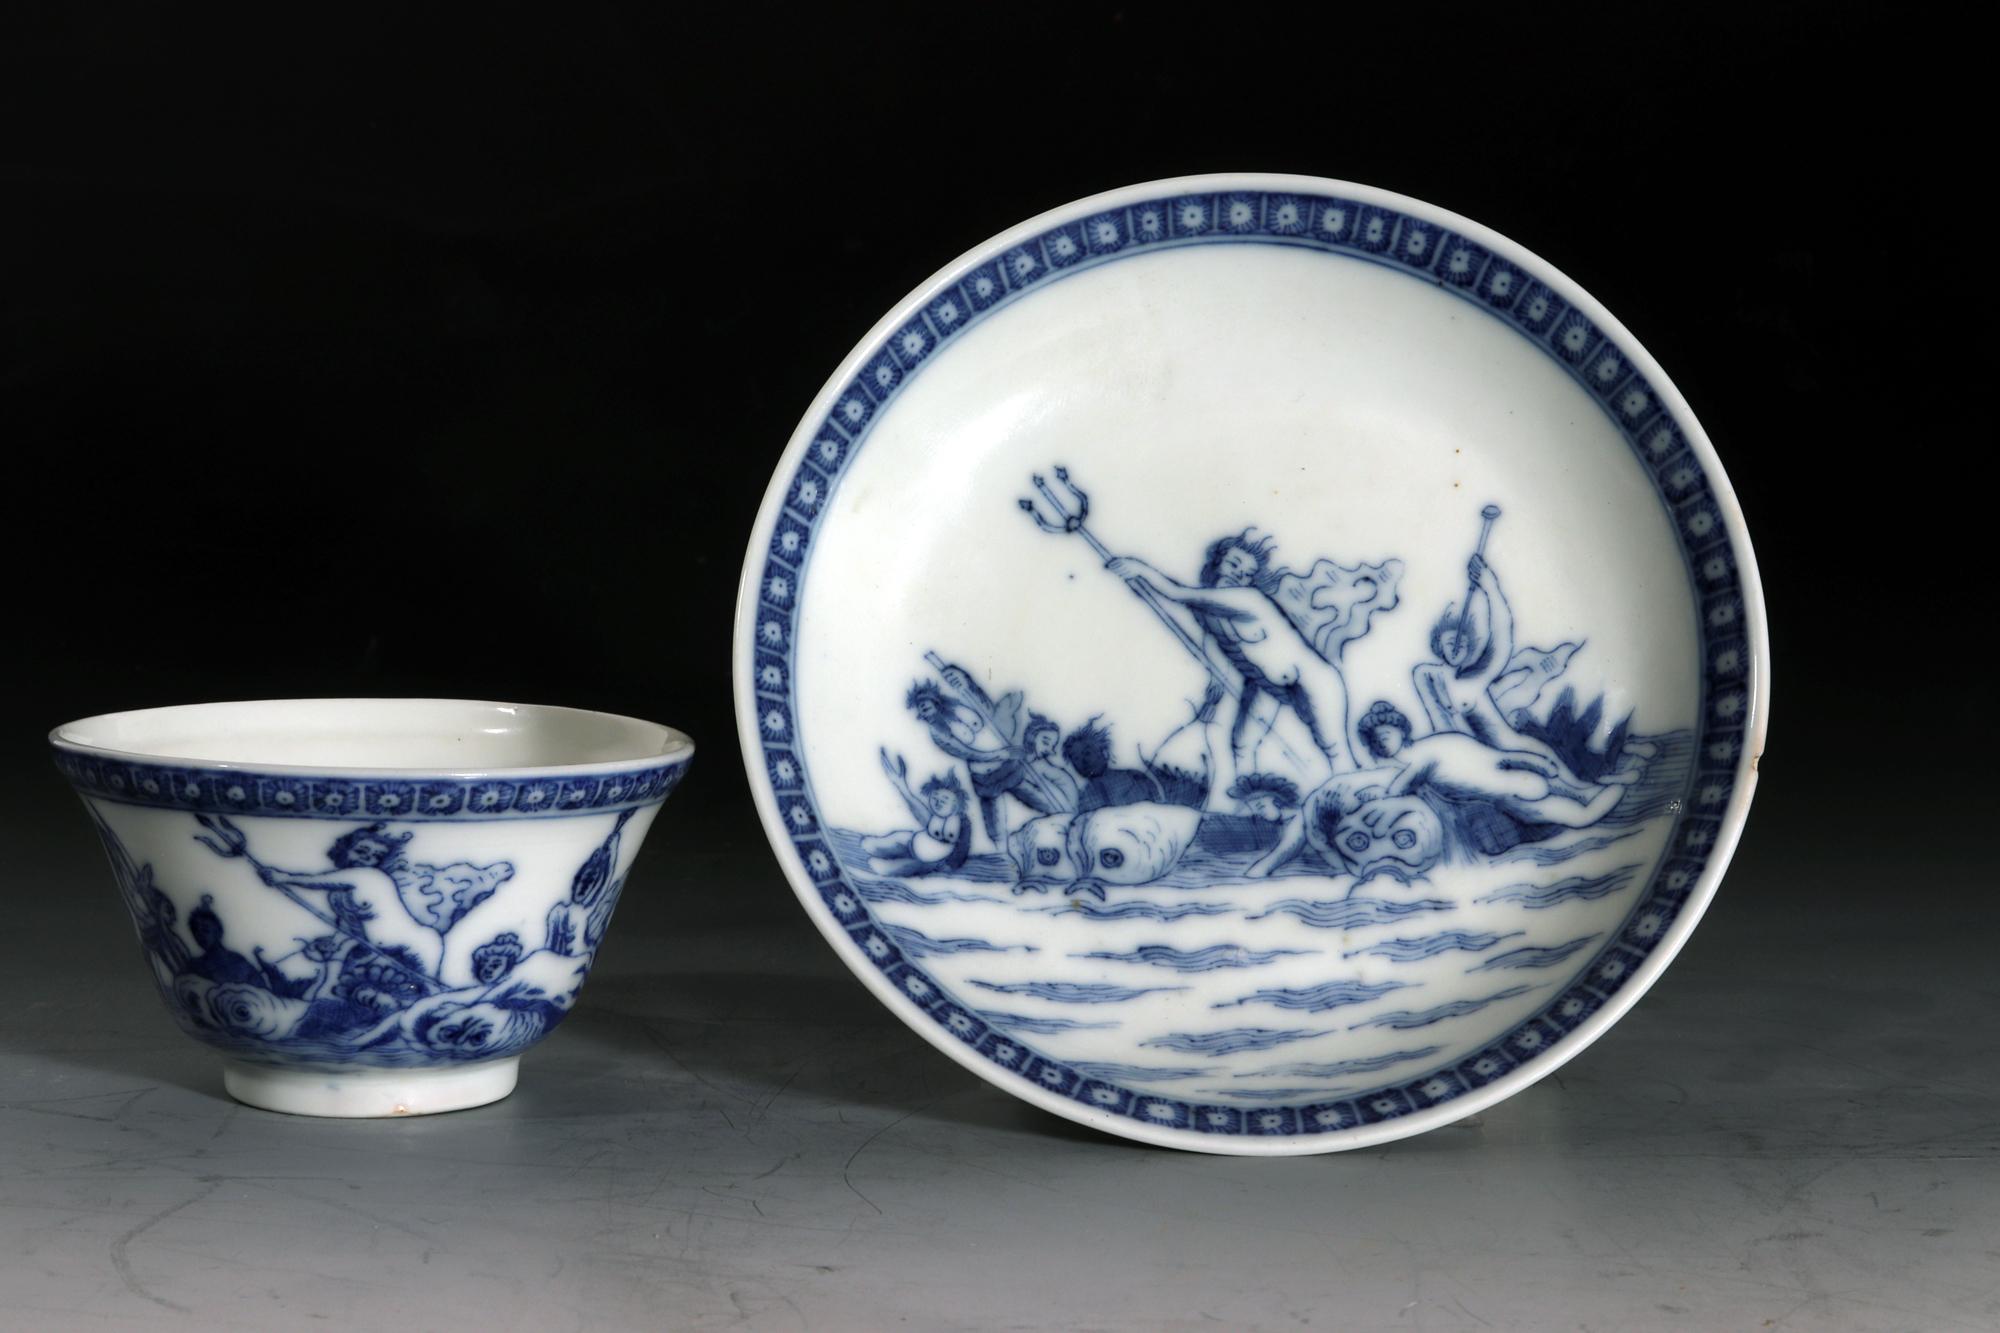 Chinese Export Porcelain European-subject Blue & White Tea Bowl und Untertasse,
Neptun, der Gott des Meeres,
Niederländischer Markt,
Yongzheng-Periode,
CIRCA 1730-35

Das chinesische Exportporzellan, das wahrscheinlich für den holländischen